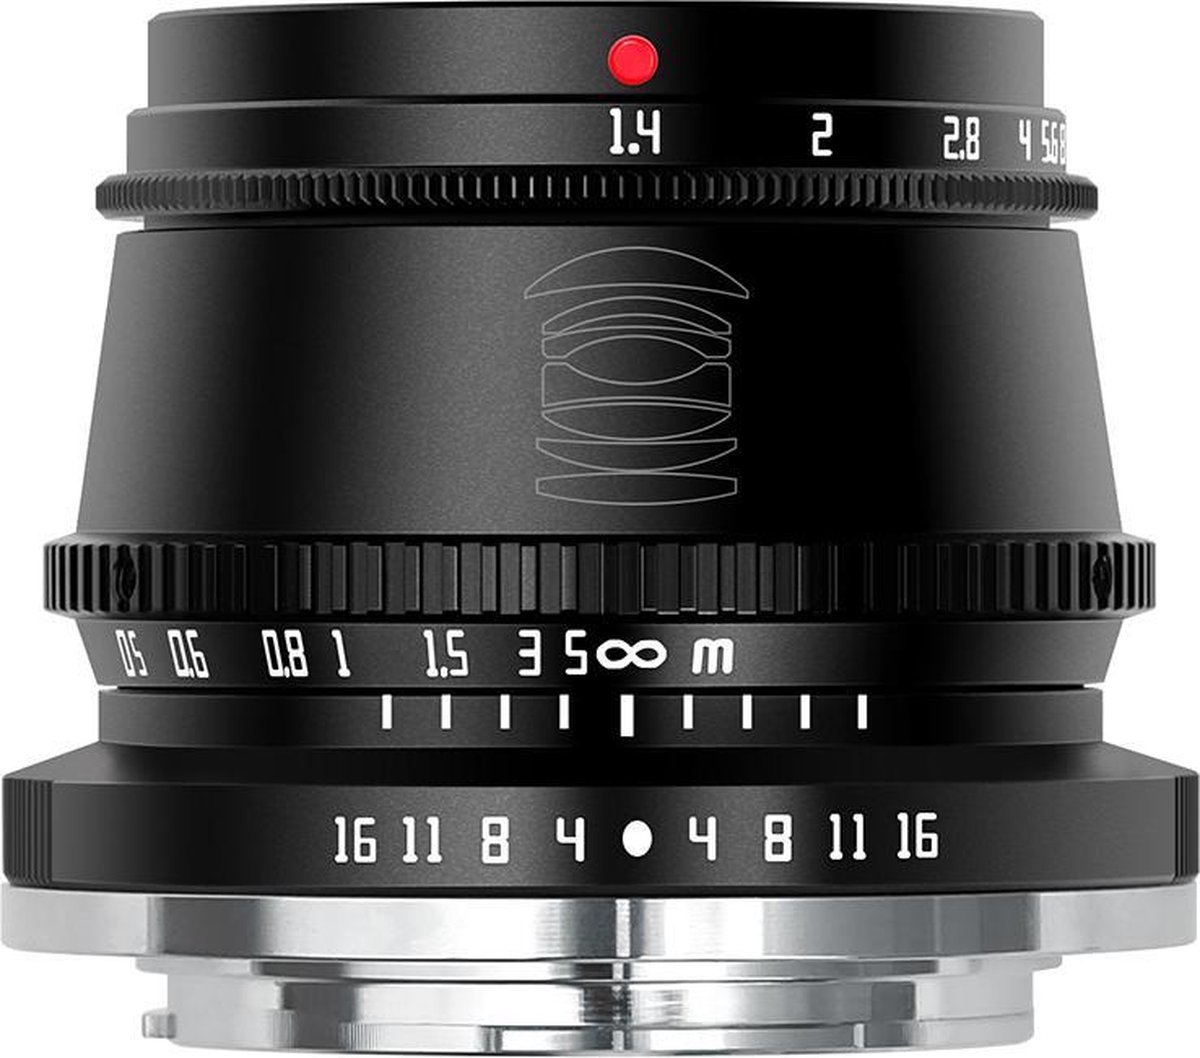 TT Artisan - Cameralens - 35 mm F1.4 APS-C voor Fuji FX-vatting, zwart